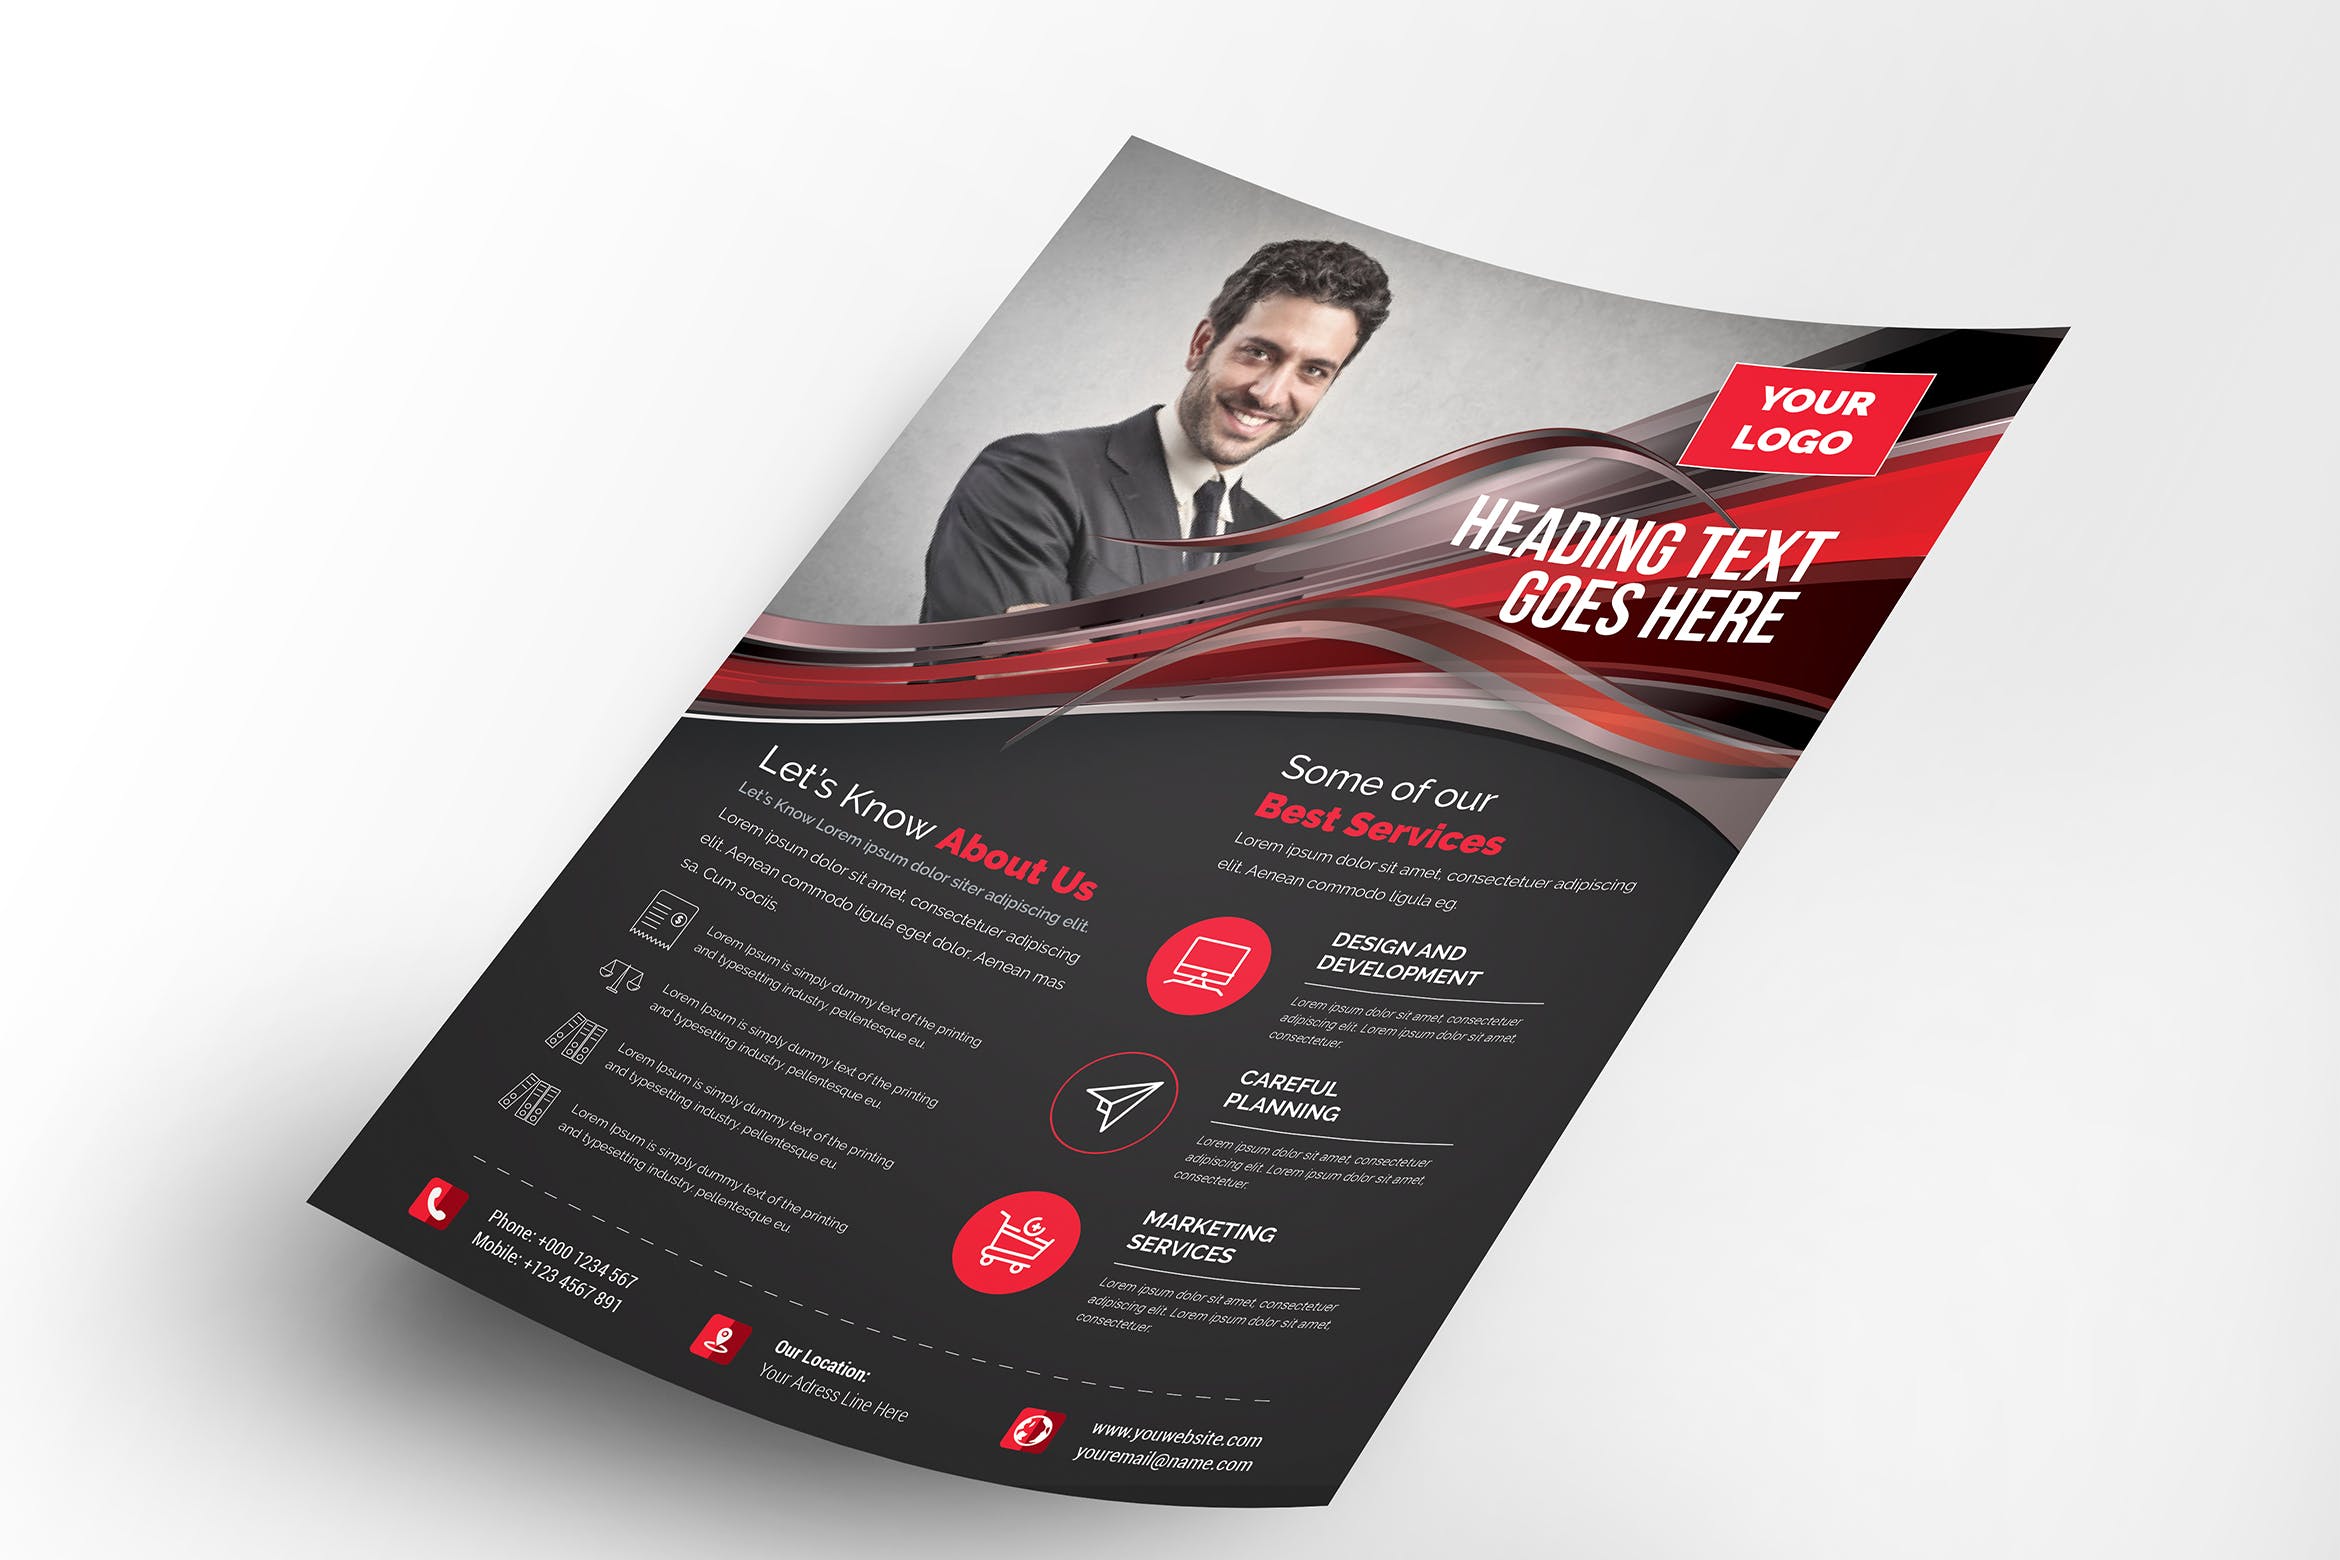 企业服务宣传单设计模板素材 Corporate Flyer插图